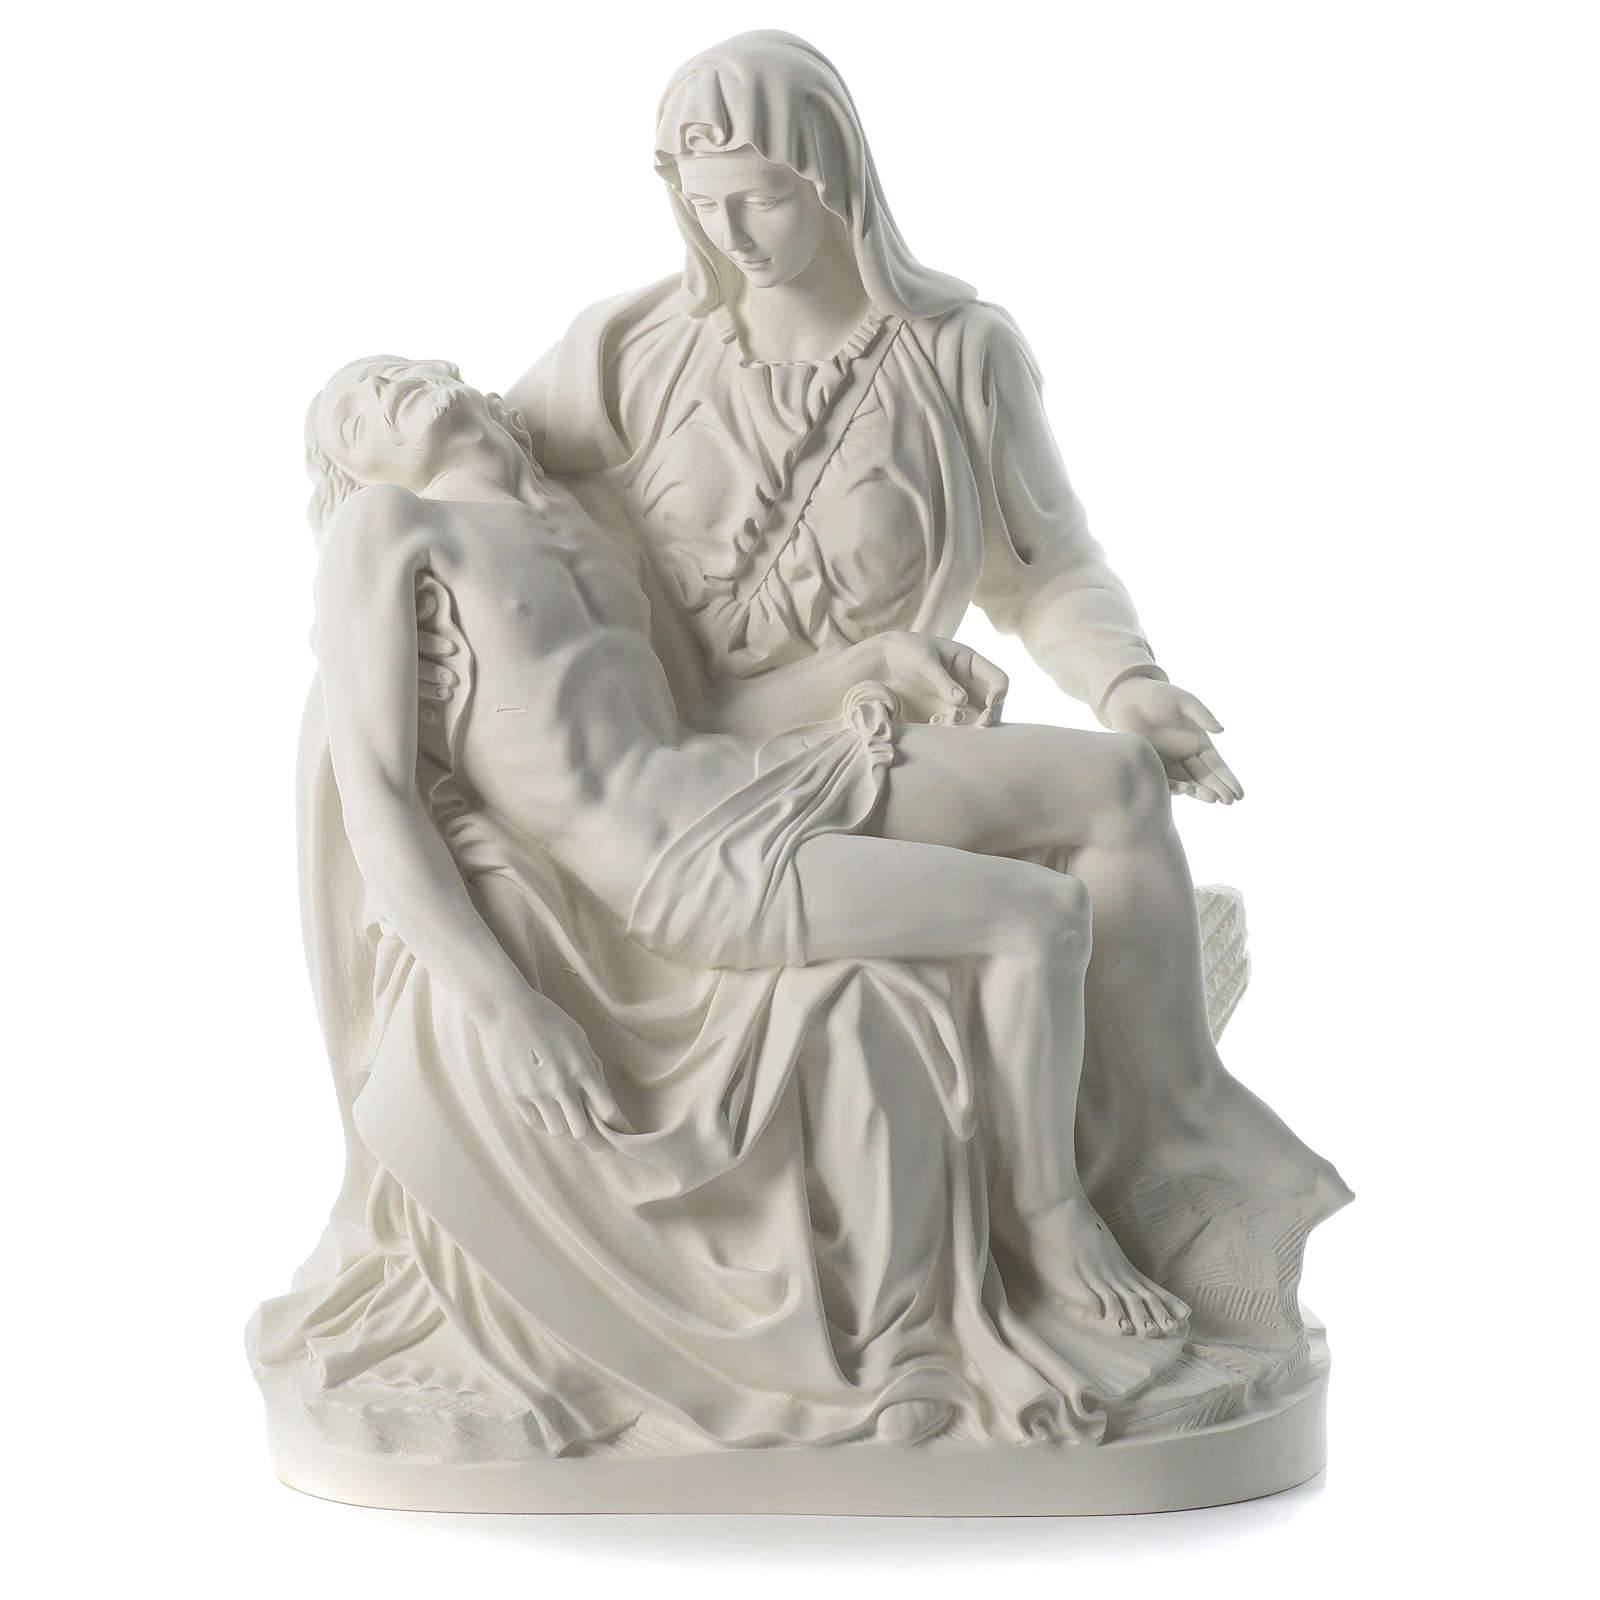 최고 품질의 대리석 - 서양식 손으로 조각한 성스러운 가족 종교 흰색 대리석 피에타 조각상 판매 – Atisan Works